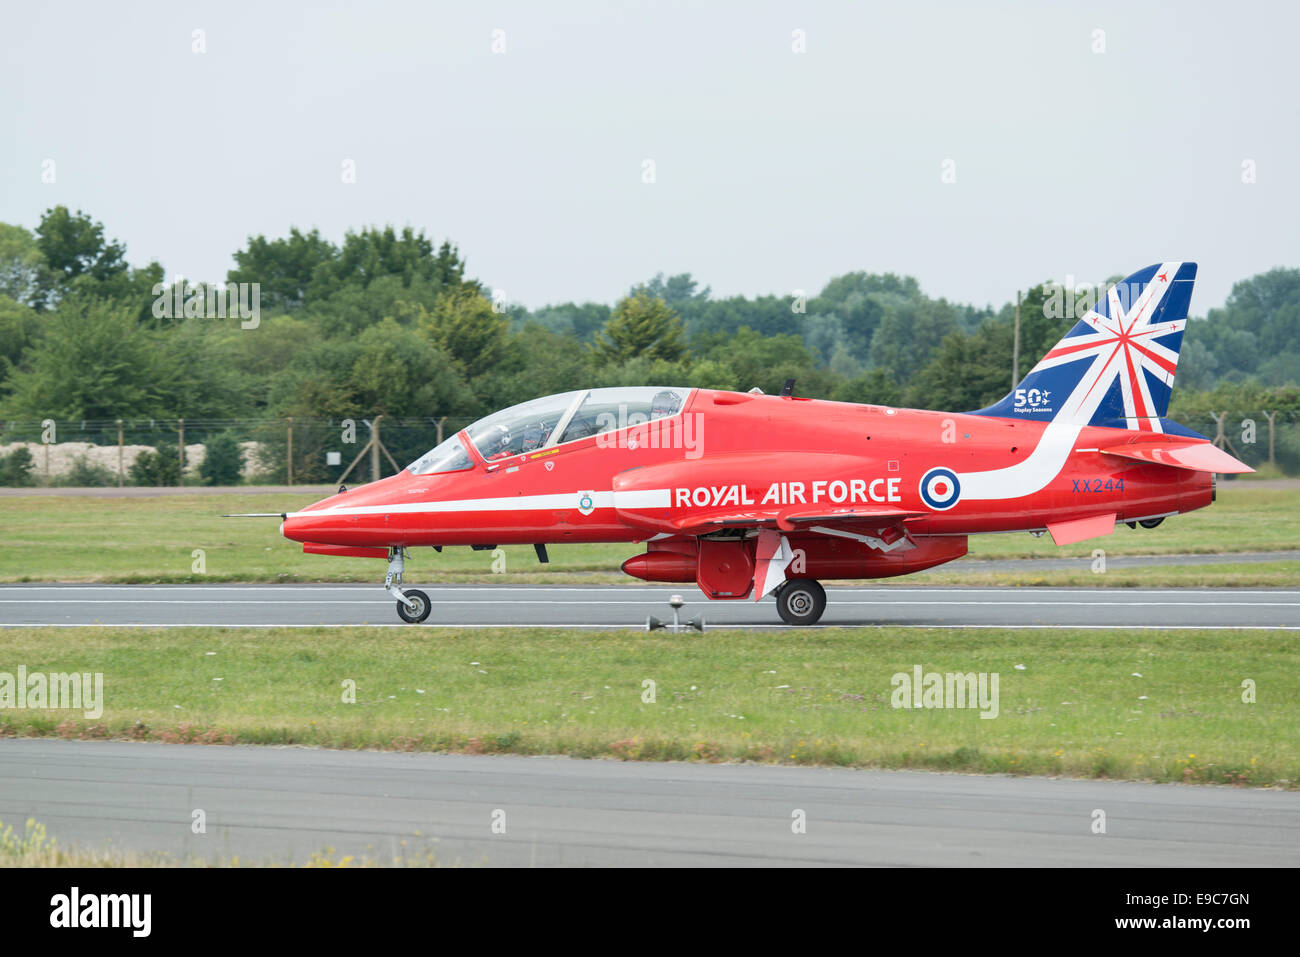 Hawker Siddeley Hawk T1un avion d'entraînement avancé de la Royal Air Force, l'équipe de voltige afficher les flèches rouges Banque D'Images